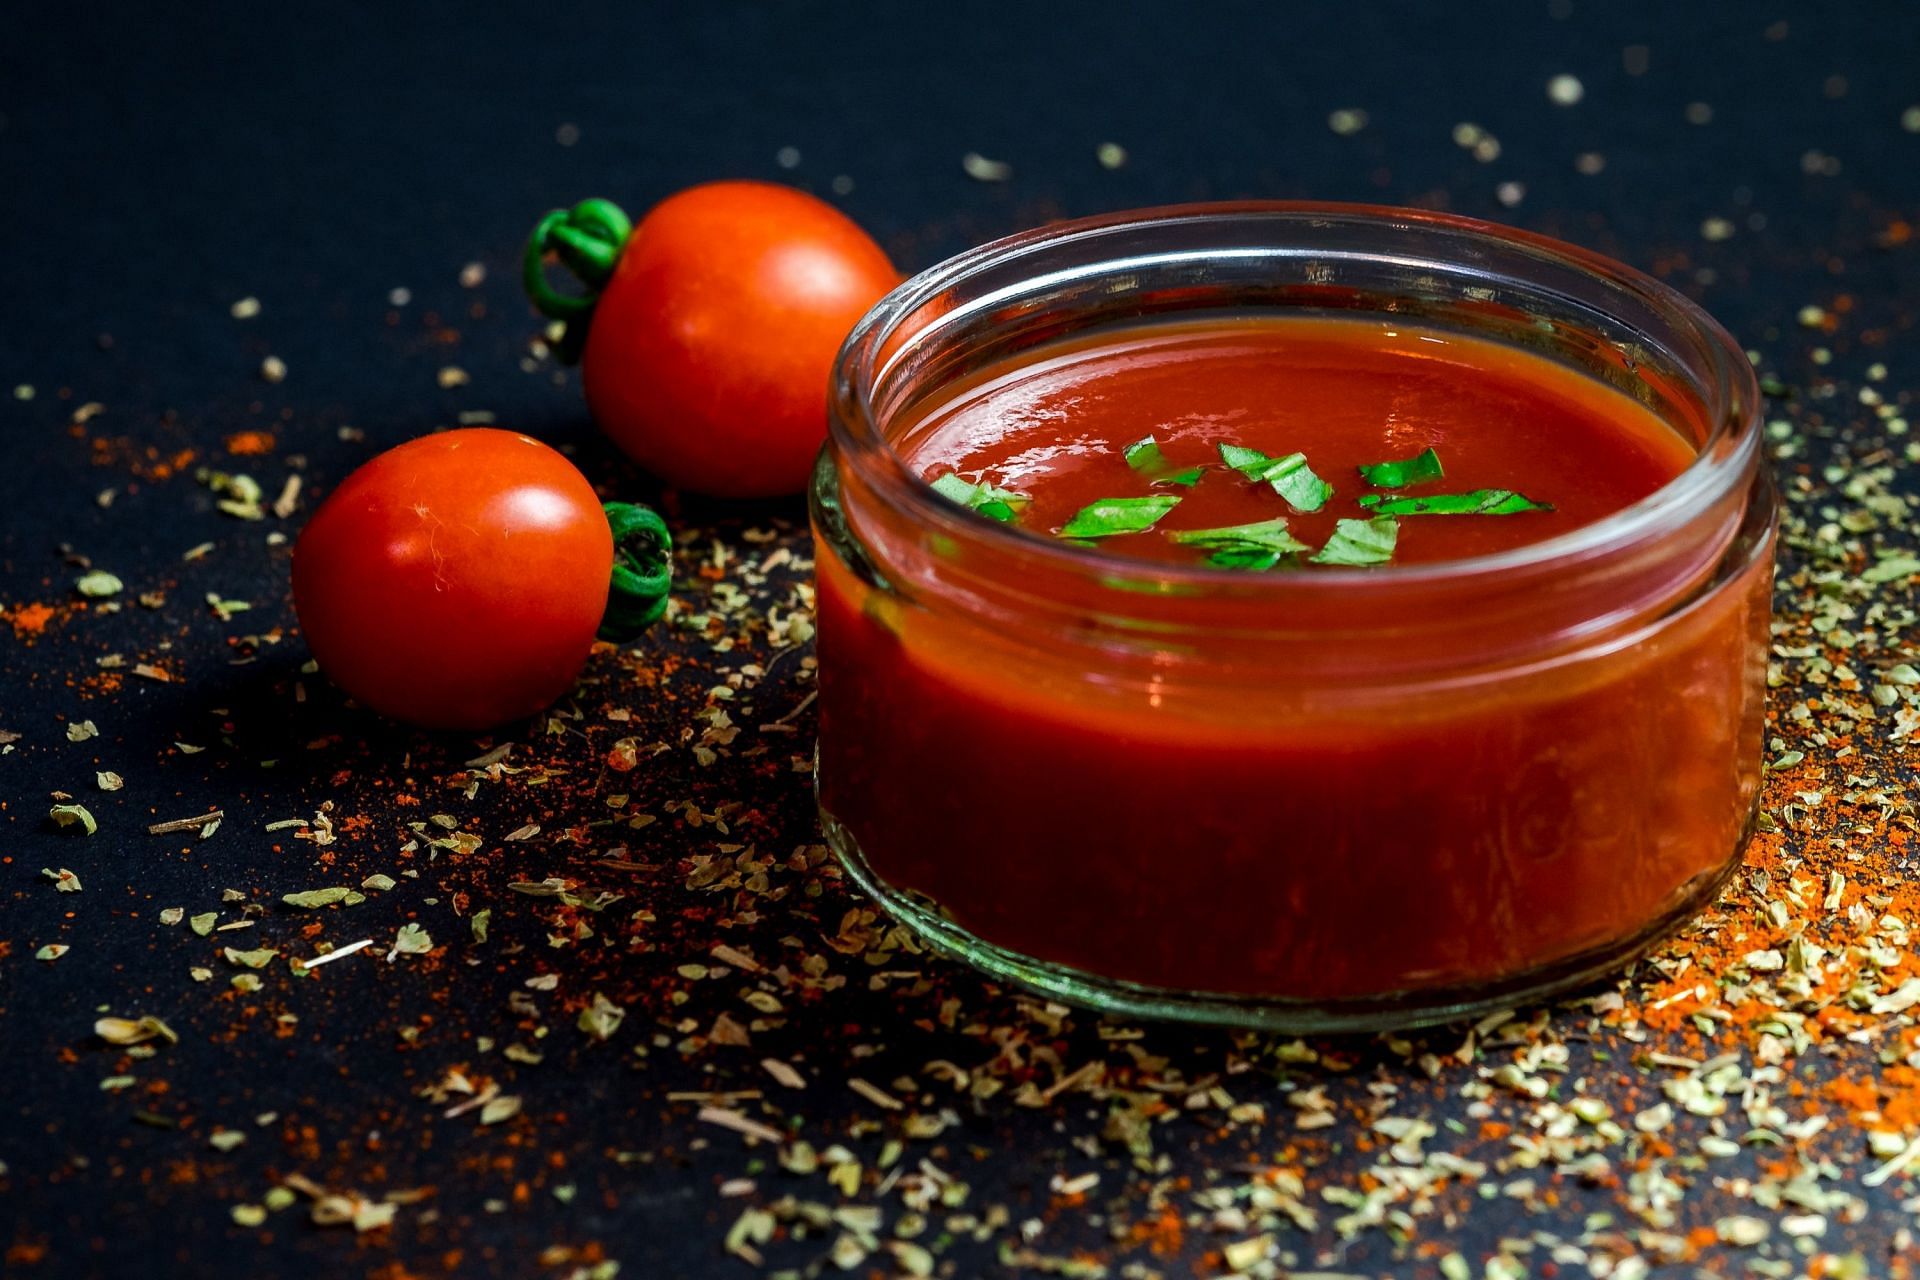 Tomato soup (Image via Dennis Klein)